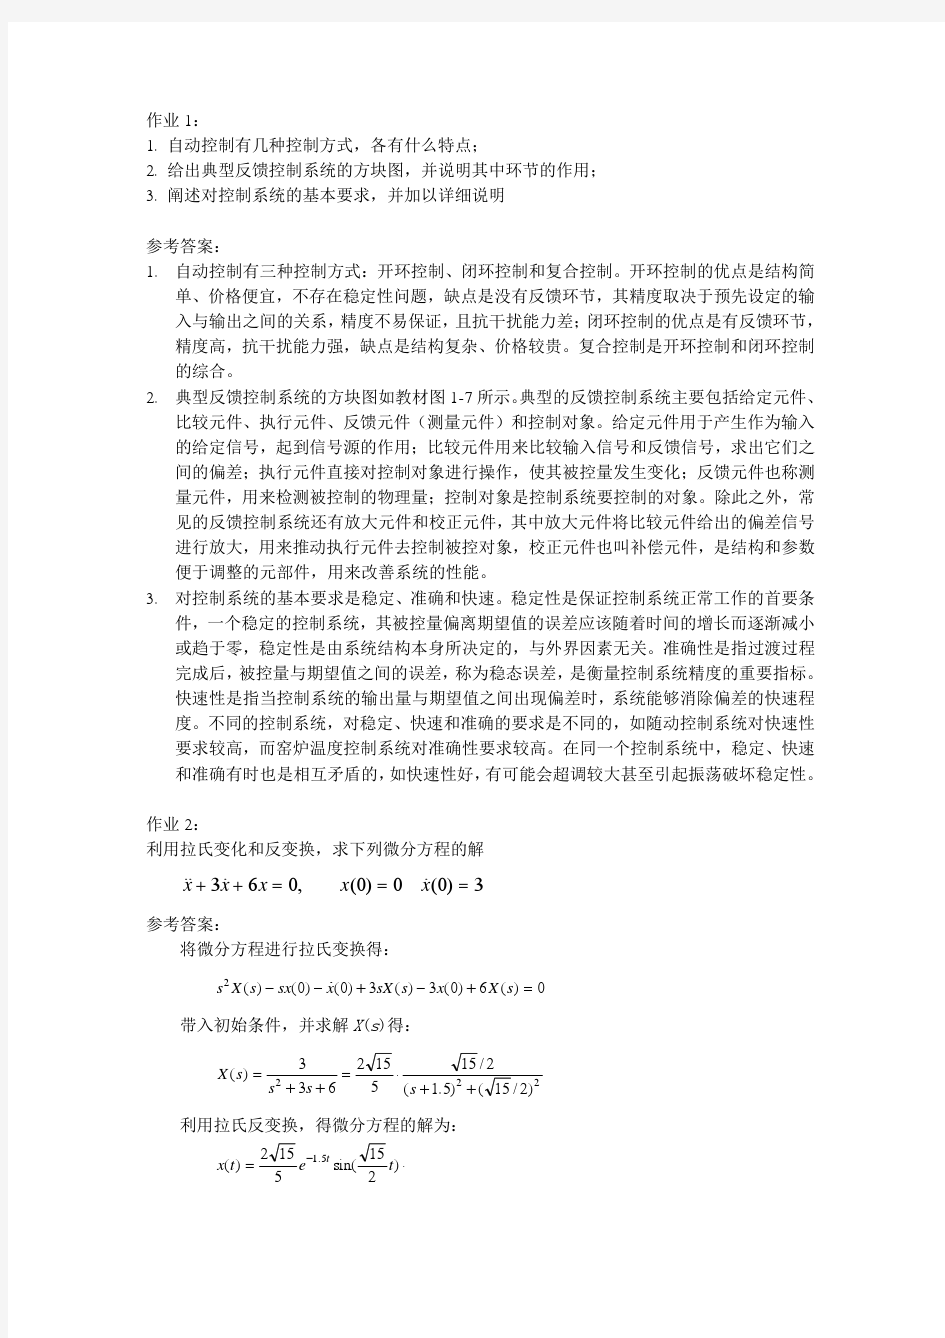 控制工程基础(第二版)答案 董景新 赵长德等pdf